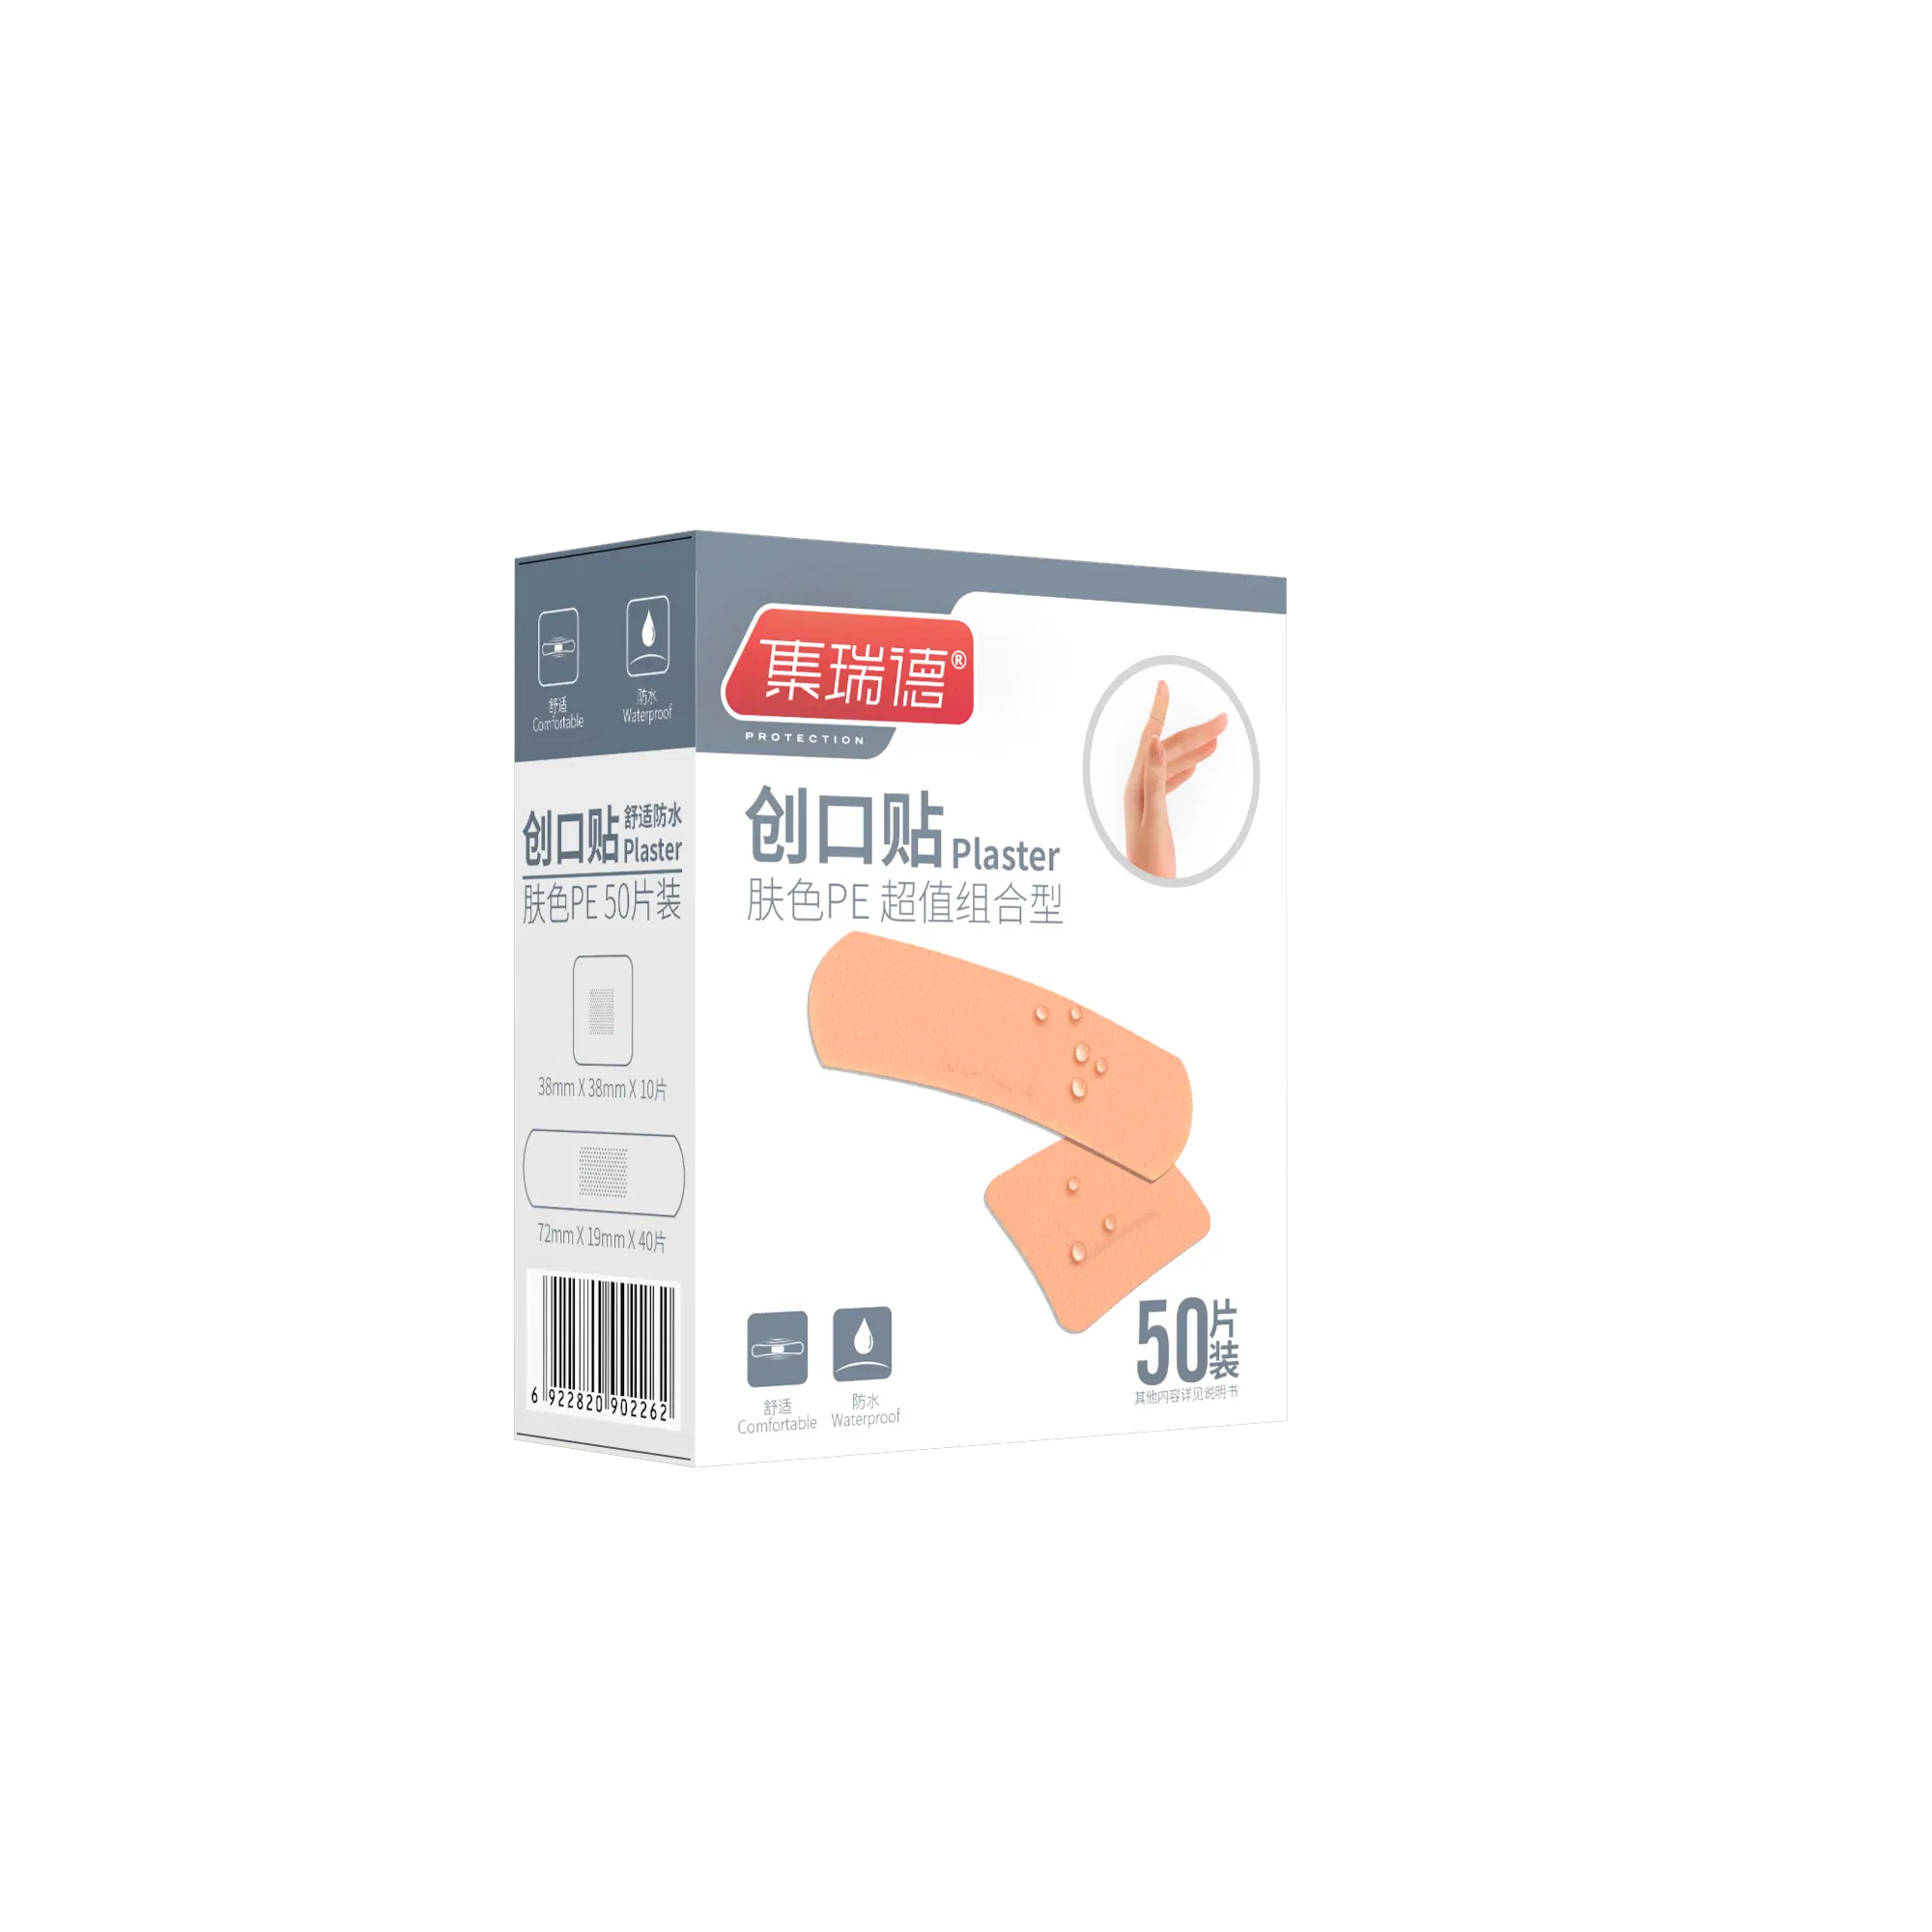 Vendajes adhesivos de PE estériles de alta calidad Parche de herida de estiramiento suave para kits de emergencia médica y clínica